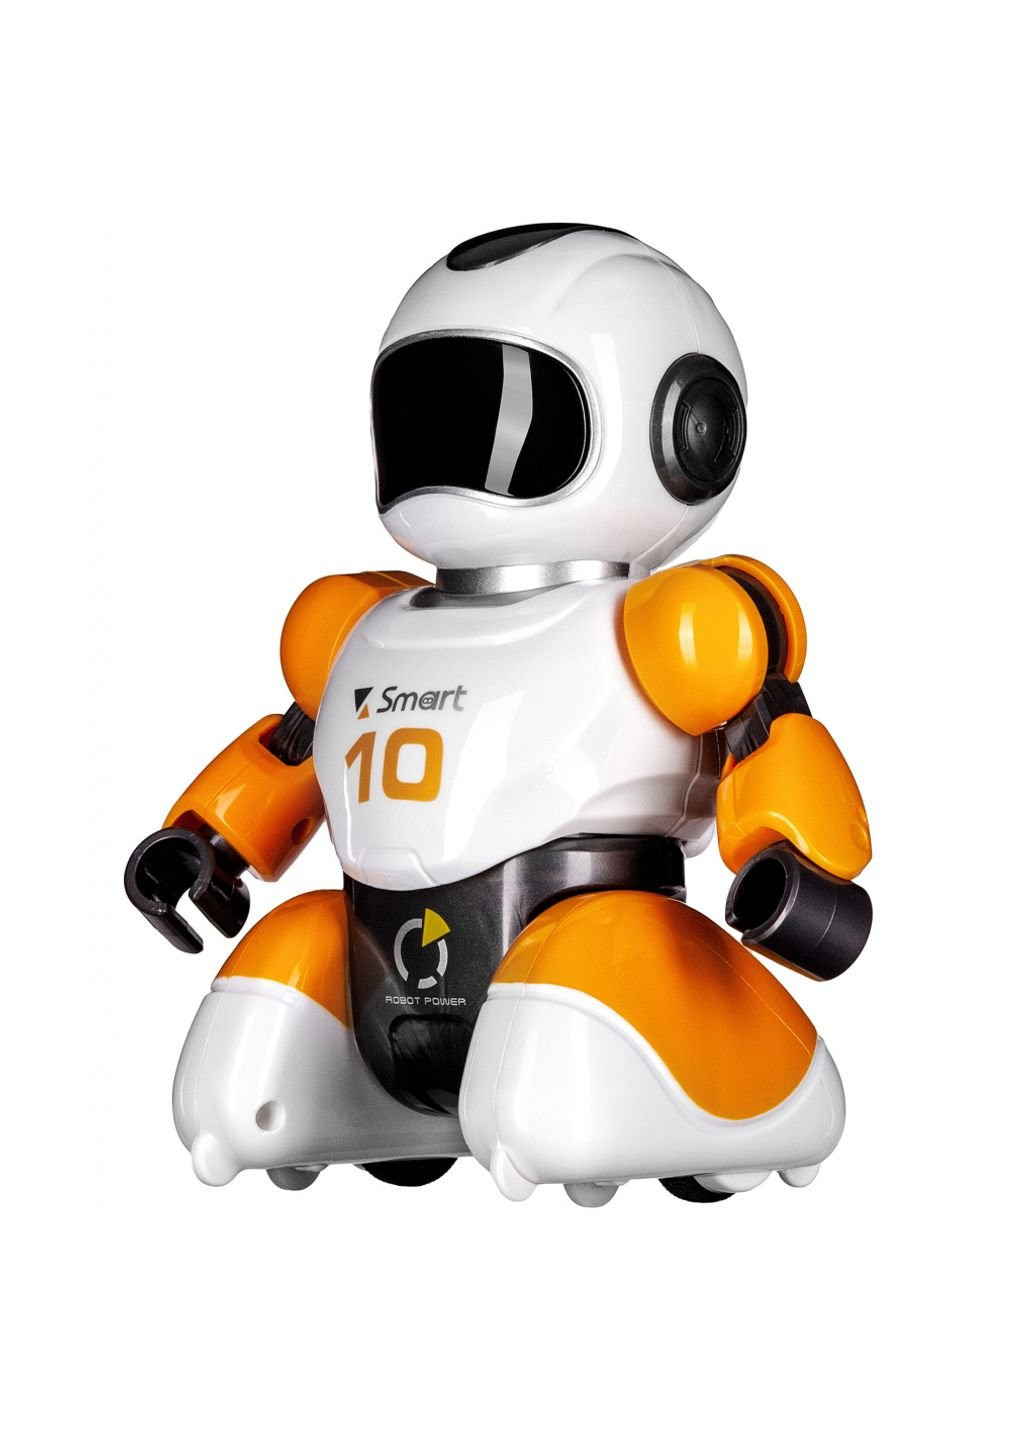 Интерактивная игрушка Робот Форвард (Желтый) на радиоуправлении (3066-CUT-YELLOW) Same Toy (254082871)